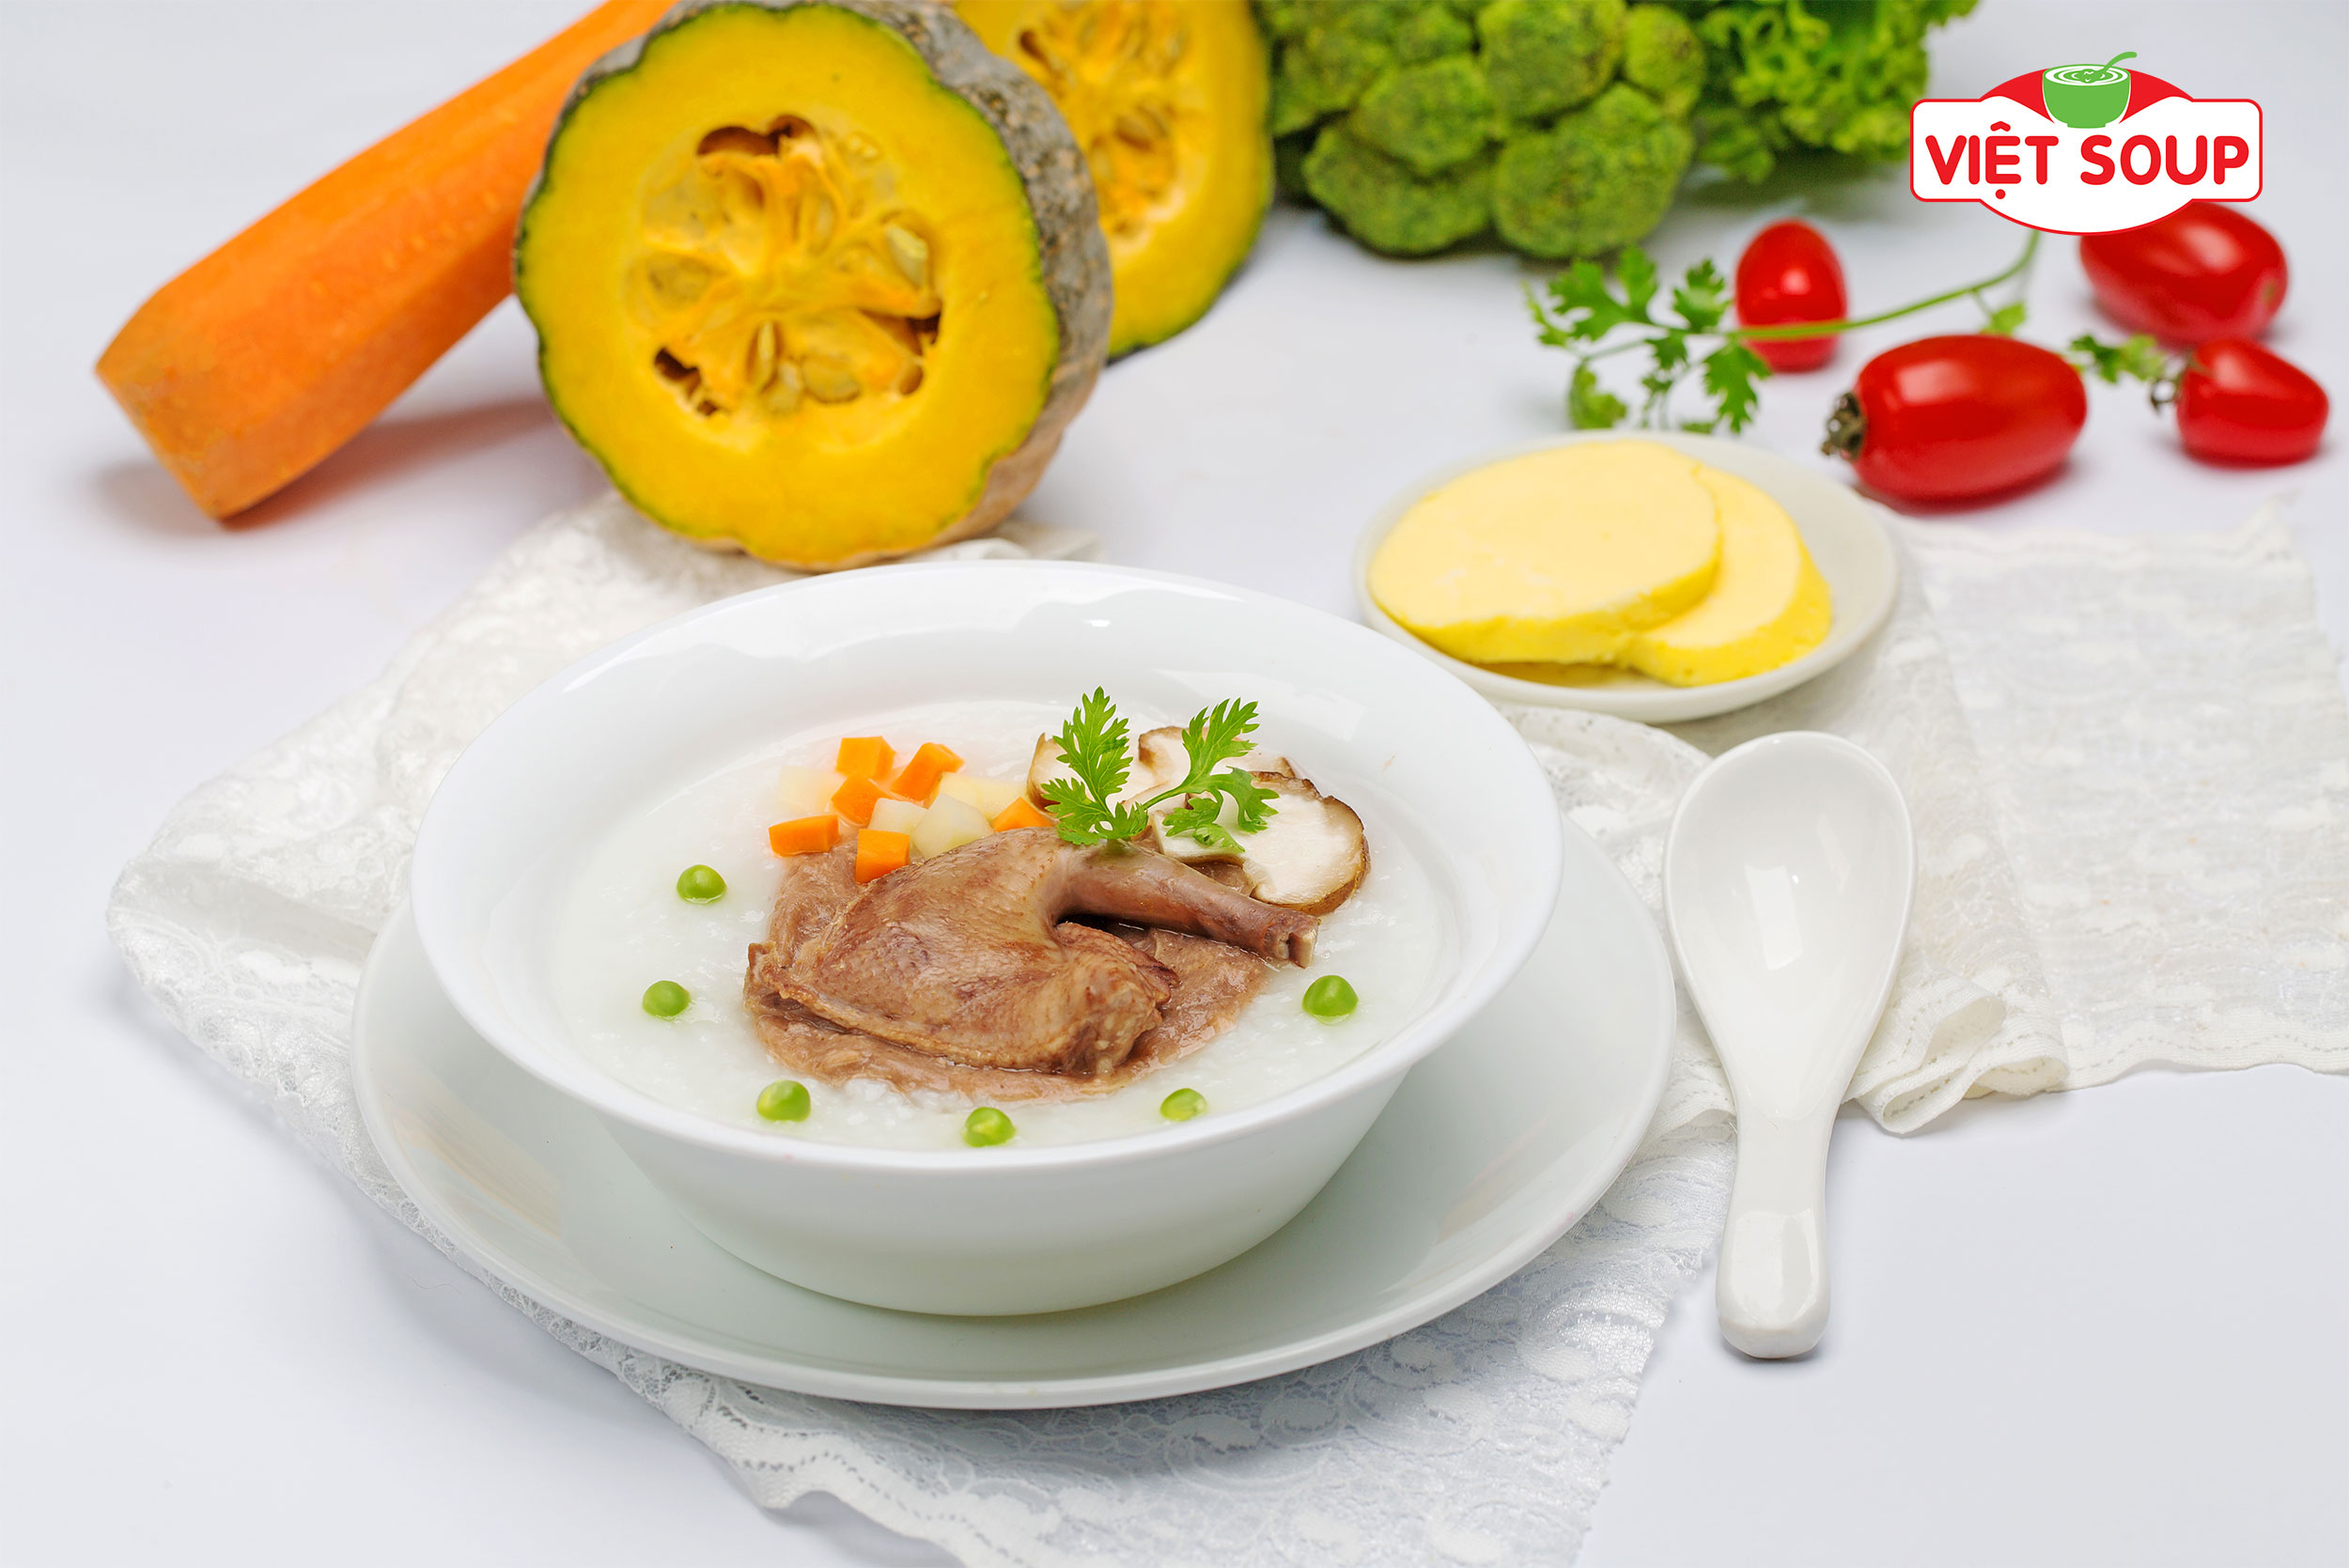 Thực đơn cháo dinh dưỡng Việt Soup giúp bé ăn ngon miệng, tăng cân